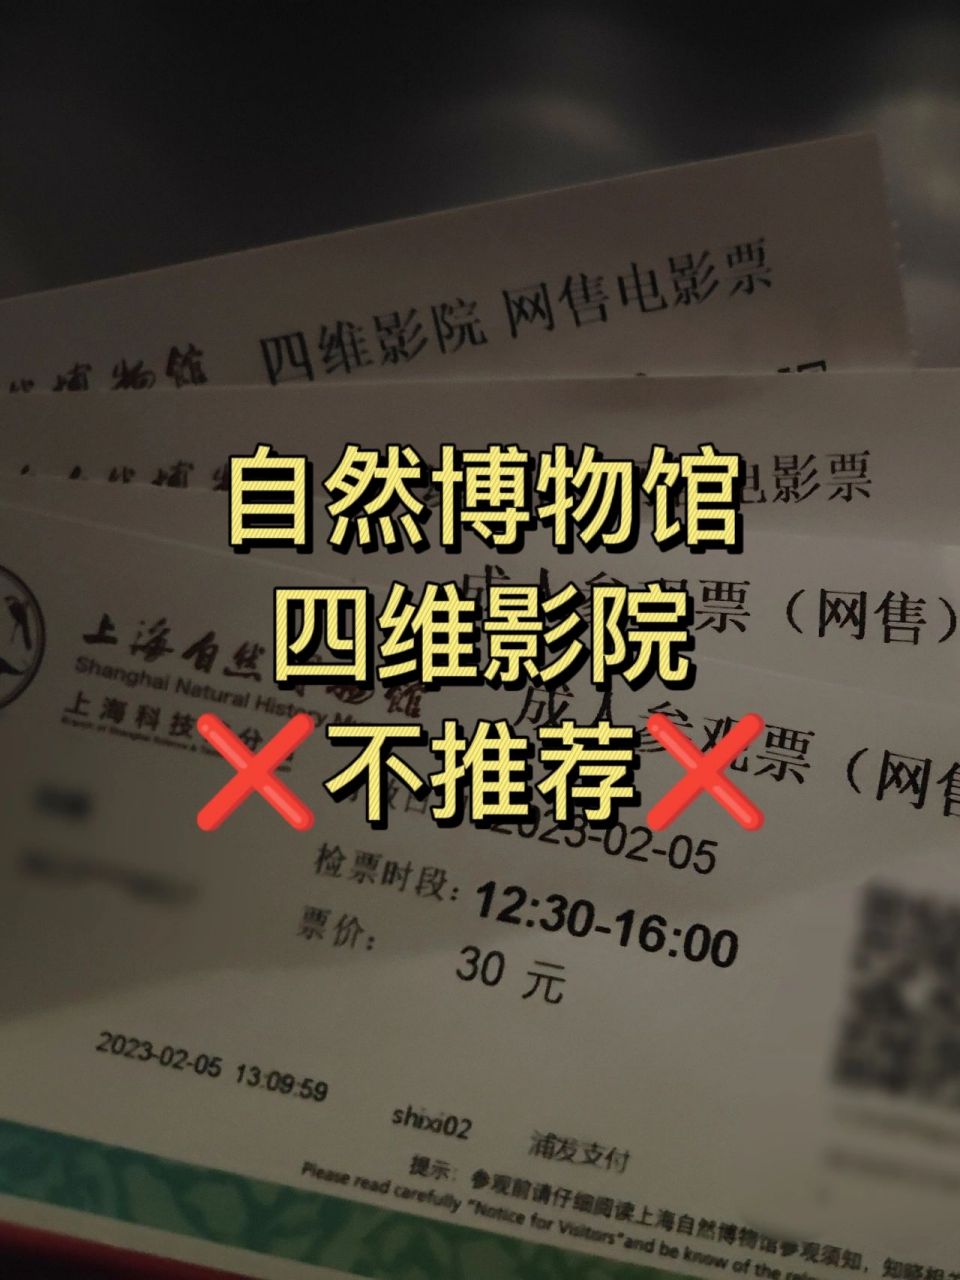 重庆自然博物馆门票图片